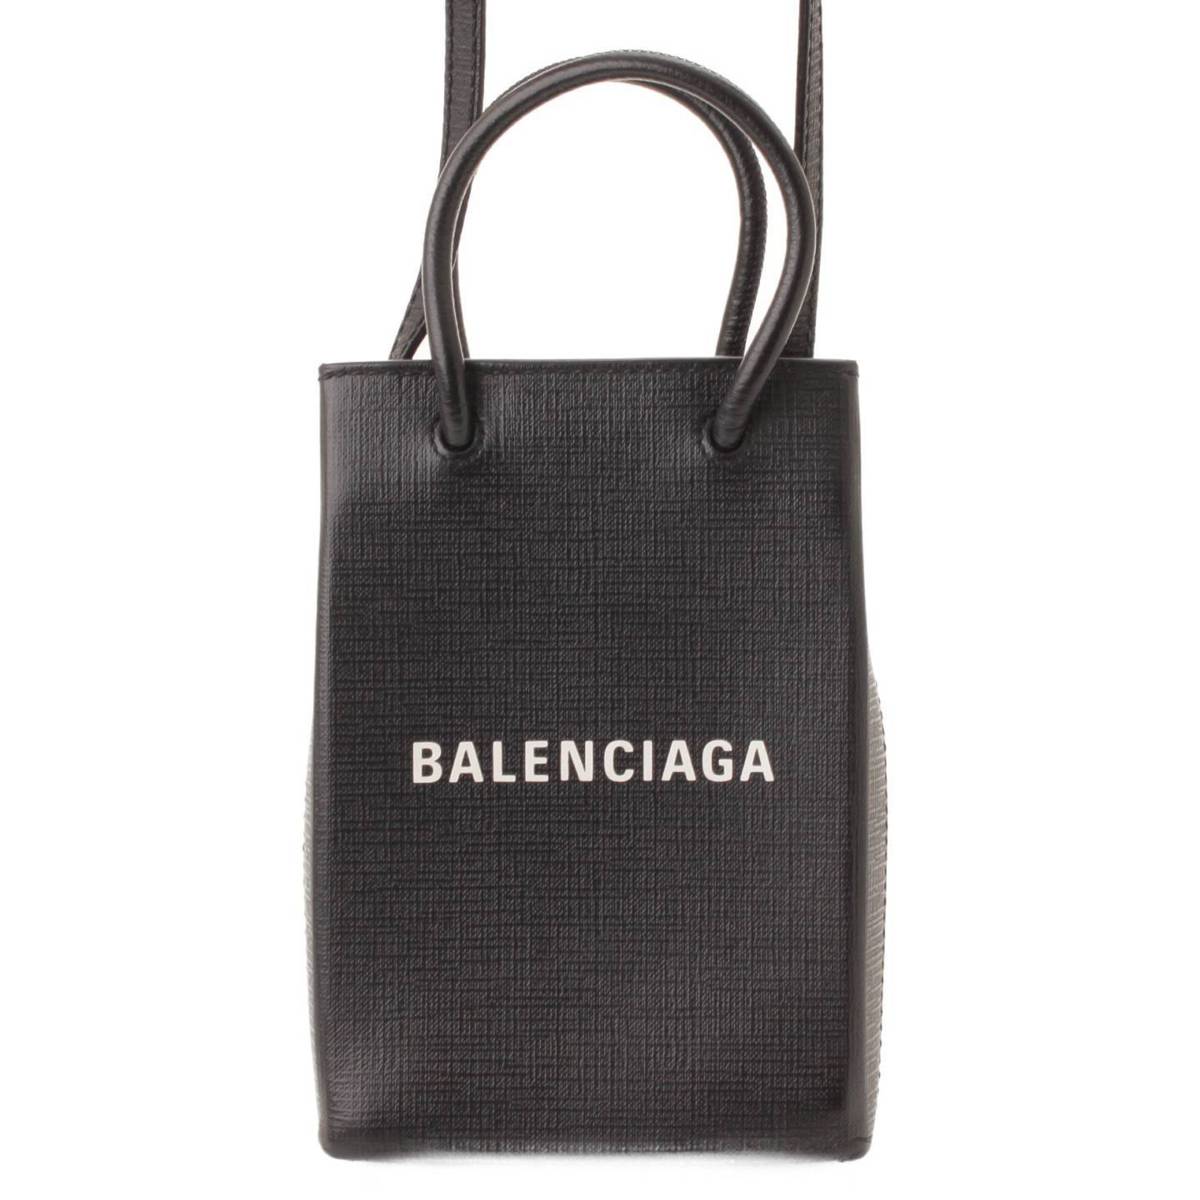 【バレンシアガ】Balenciaga　ショッピングフォンホルダー レザー 2WAY ショルダーバッグ 593826 ブラック  【中古】【鑑定済・正規品保証】162697 | retro